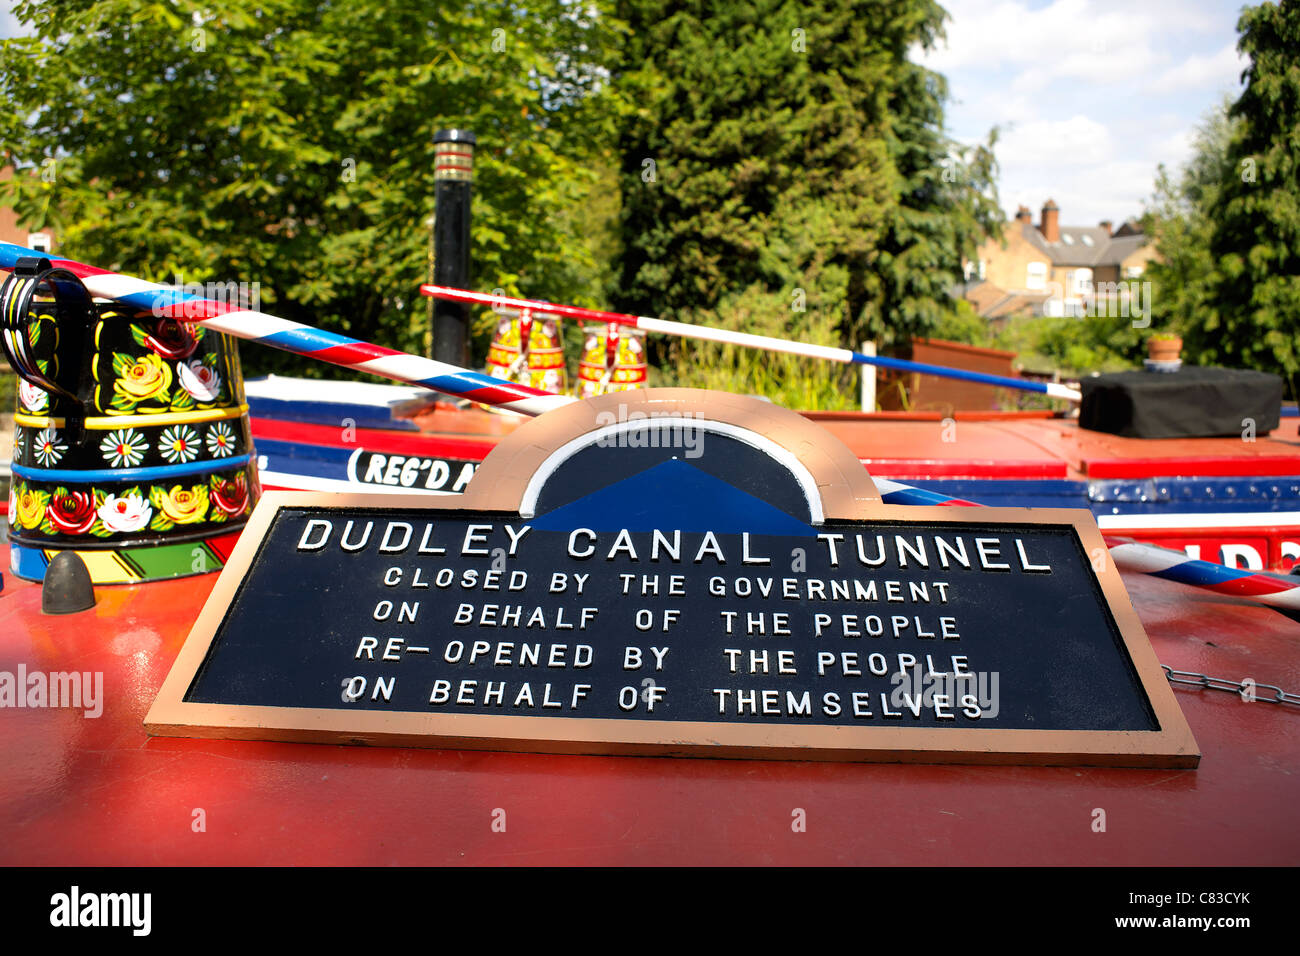 Avviso sul tetto di un narrowboat dicendo Dudley Canal Tunnel, chiusa dal governo a nome del popolo, riaperto Foto Stock